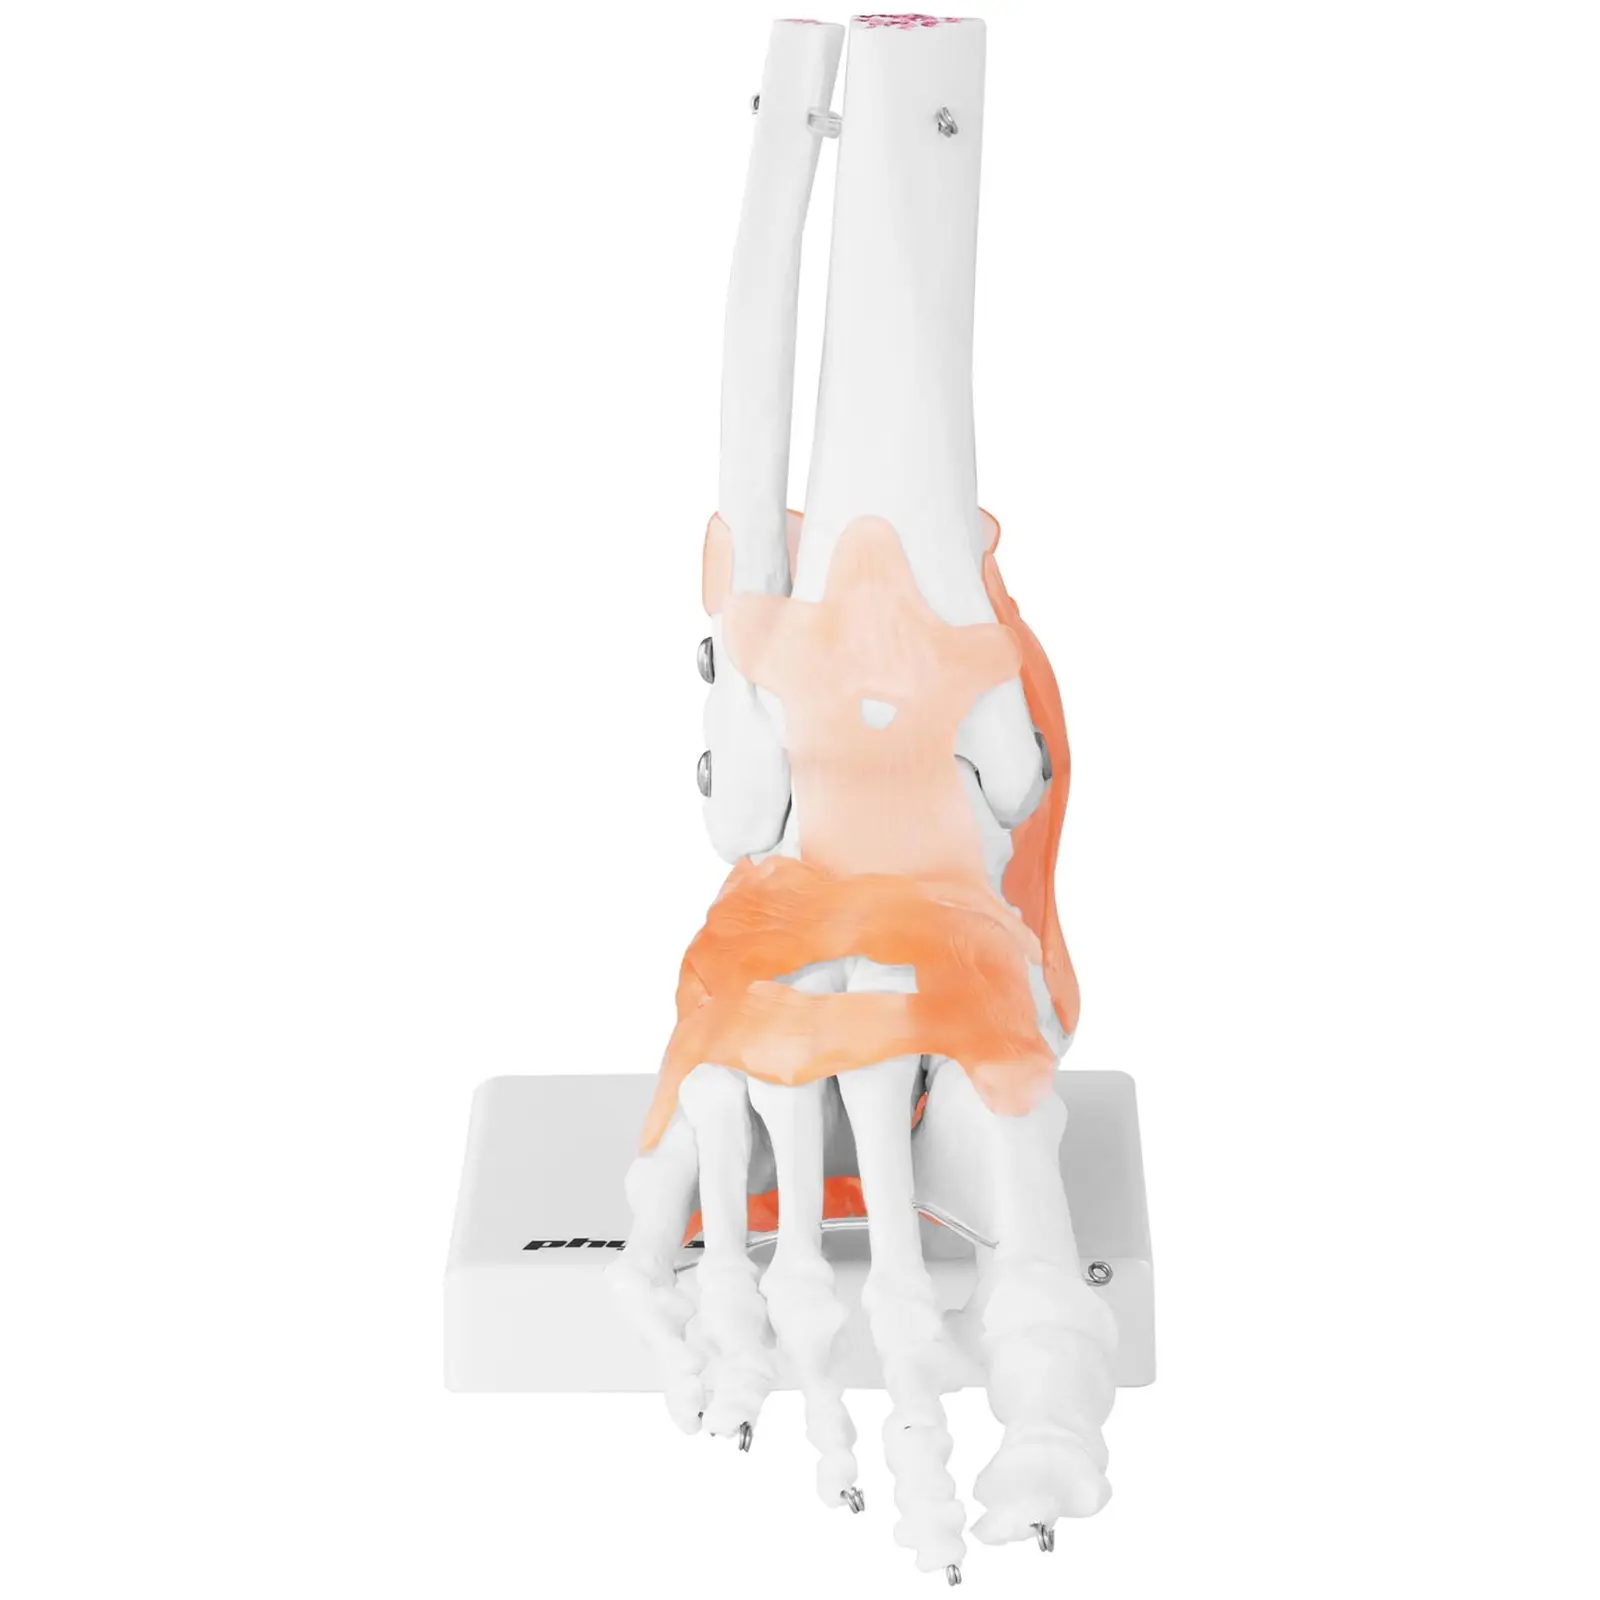 Modelo anatómico de pie - con ligamentos y articulaciones